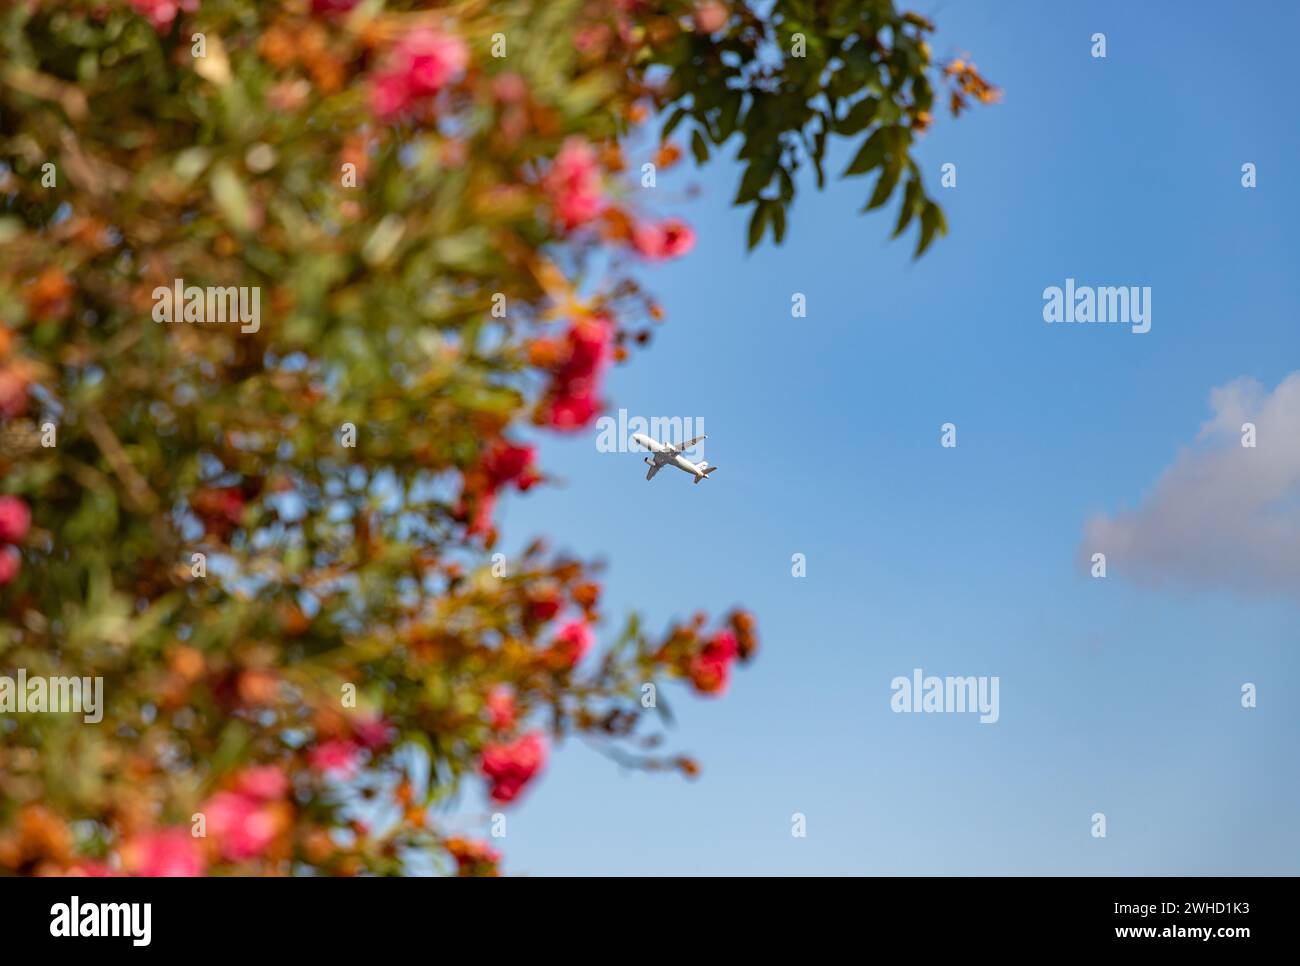 Ein Bild eines Flugzeugs, das über dem Himmel fliegt, mit Blumen im Vordergrund. Stockfoto